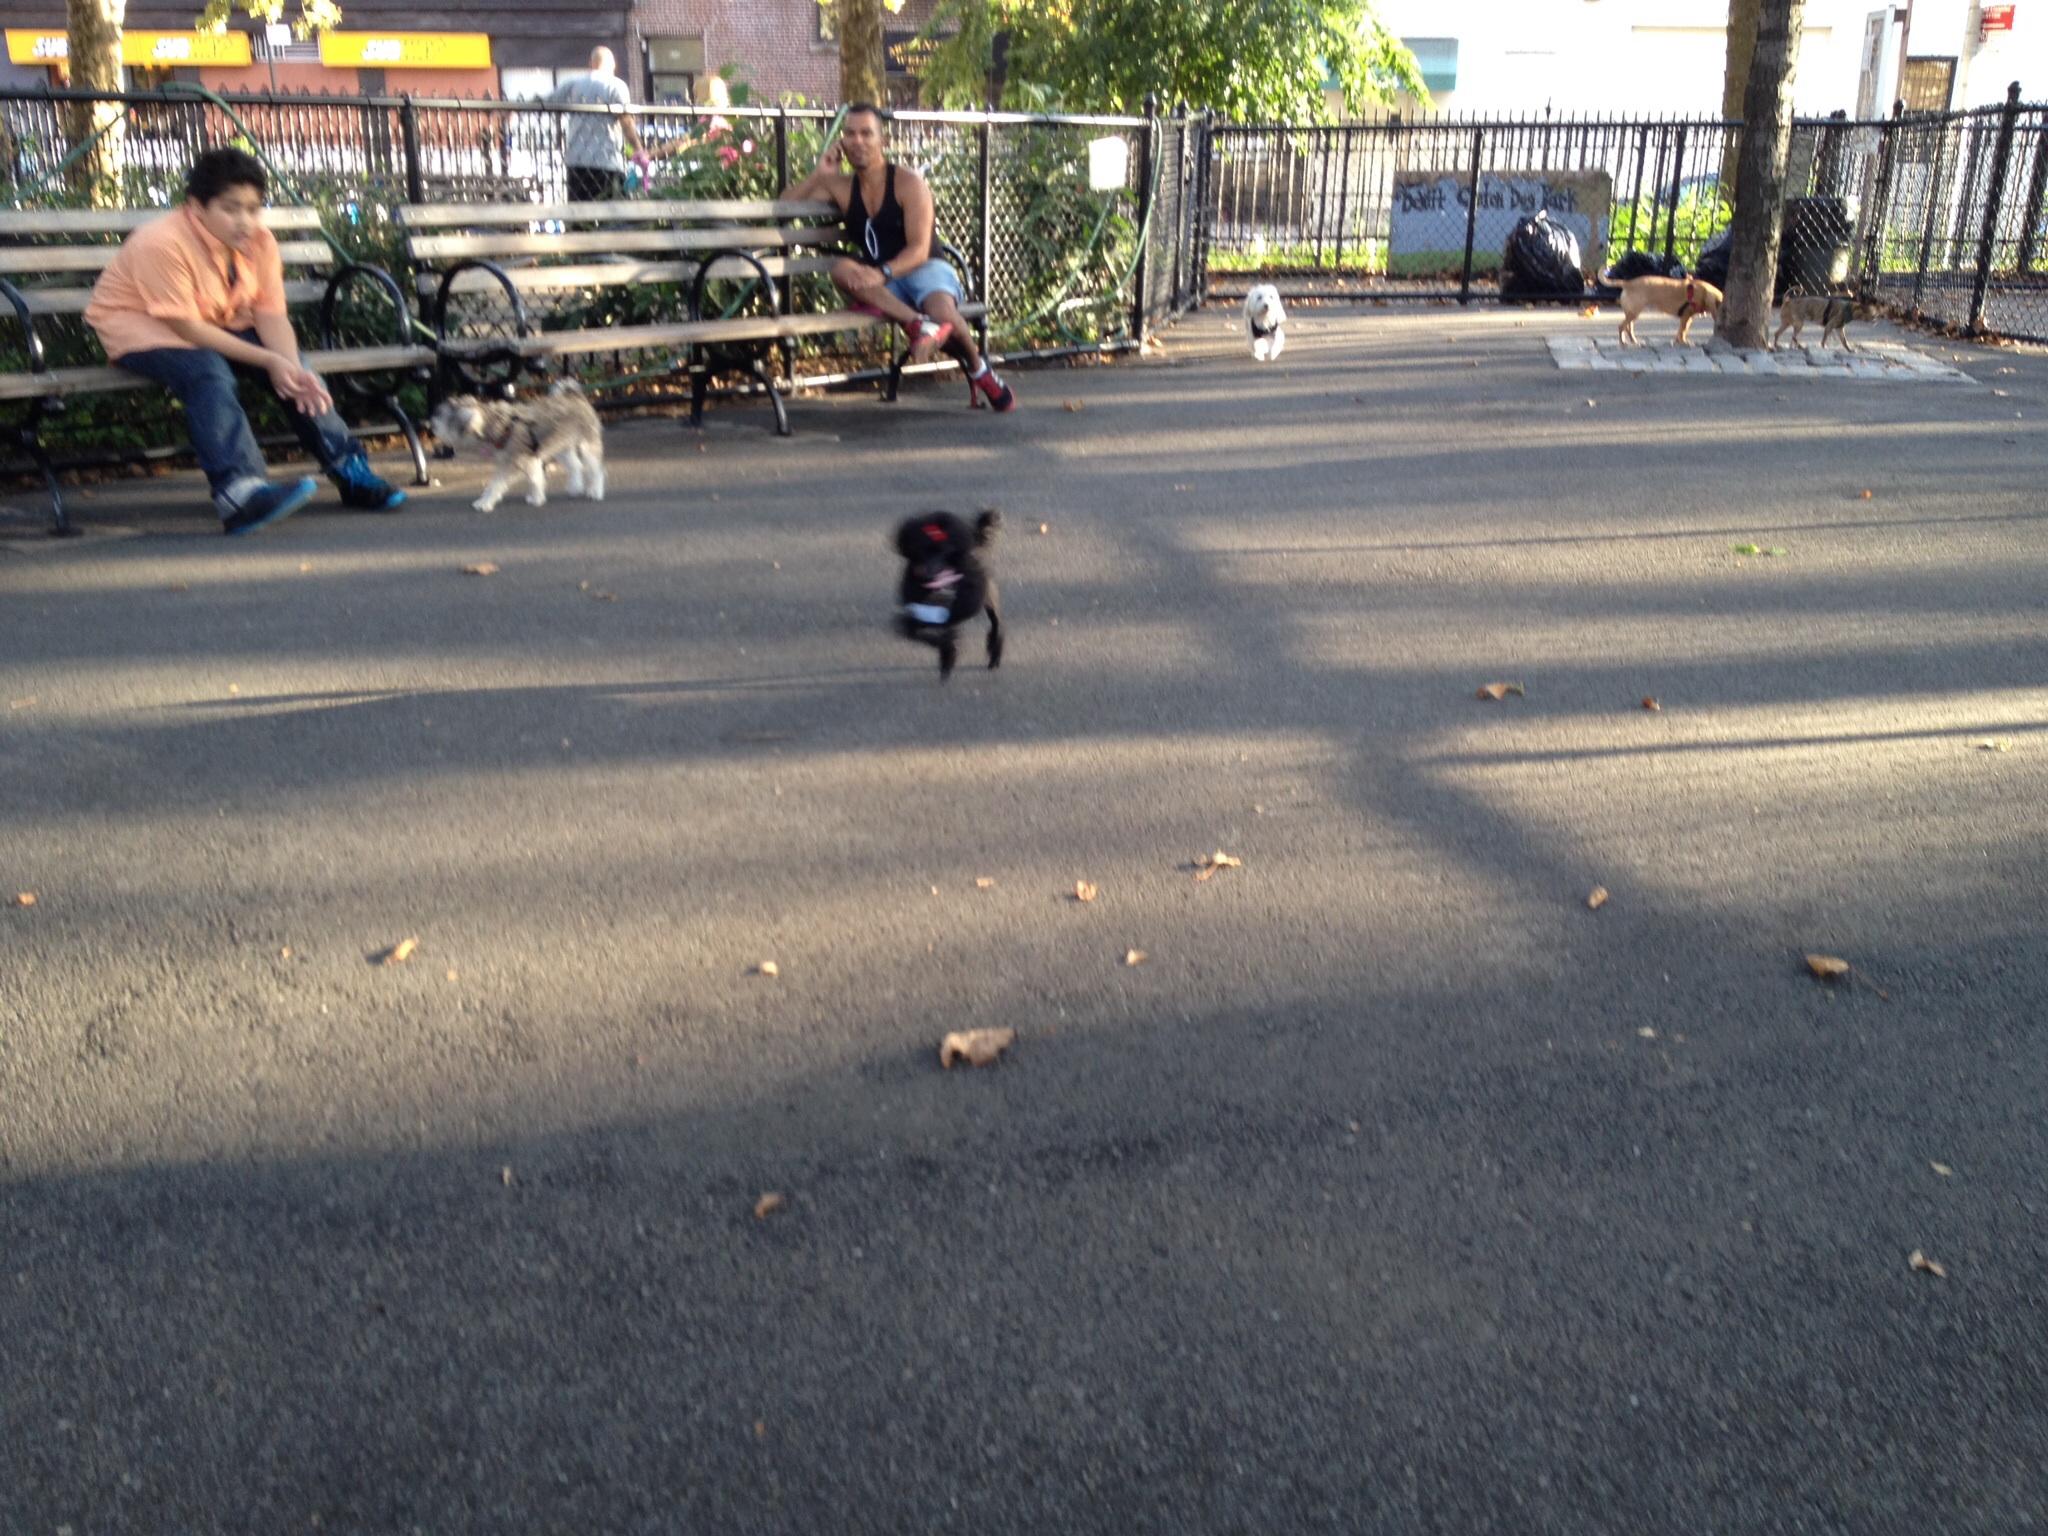 Pet Friendly Dog Run at de Witt Clinton Park